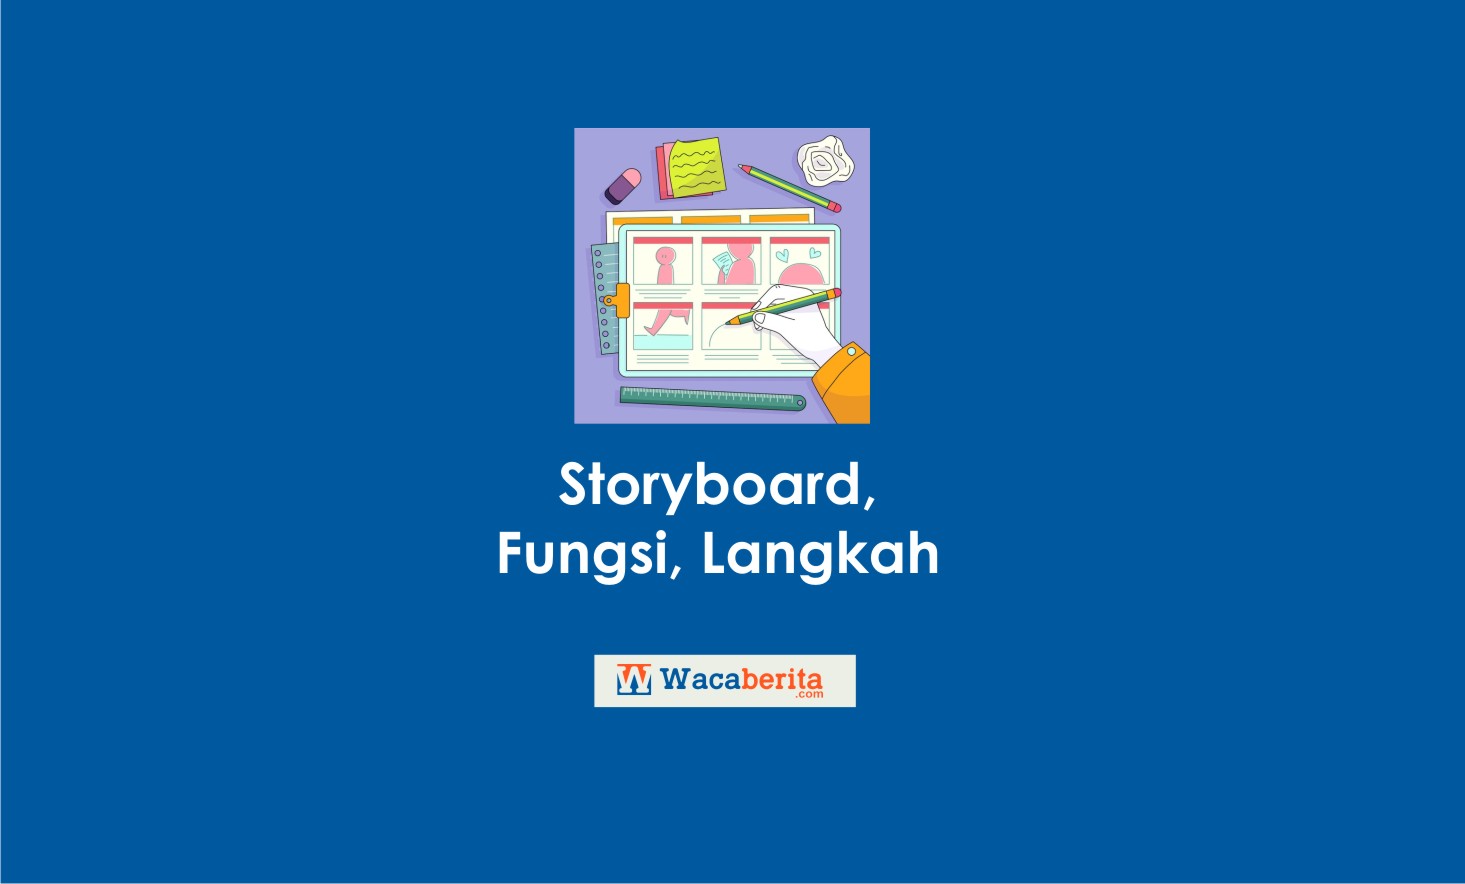 Storyboard, Fungsi, Langkah